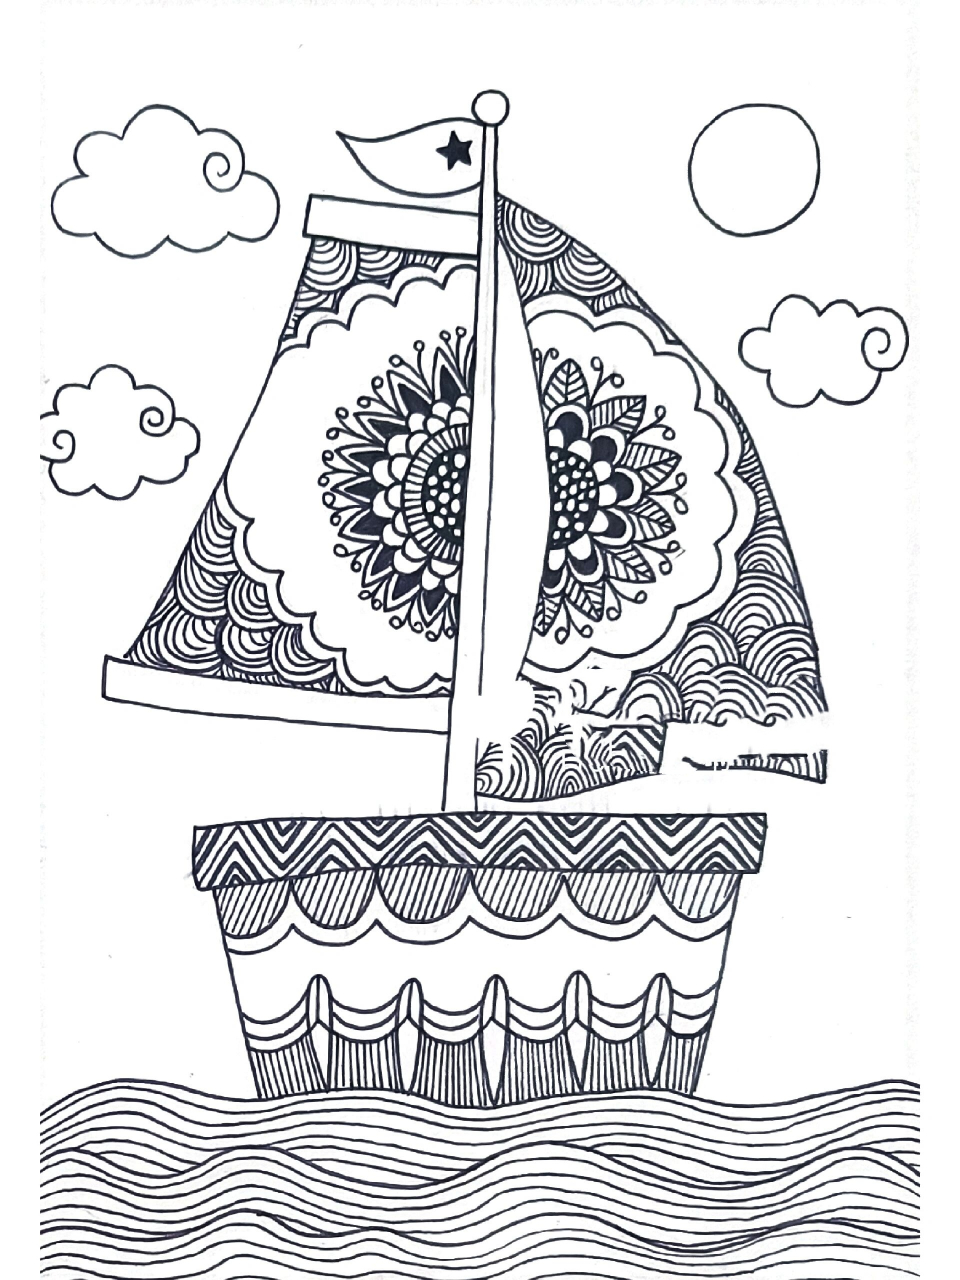 帆船手绘简单图片